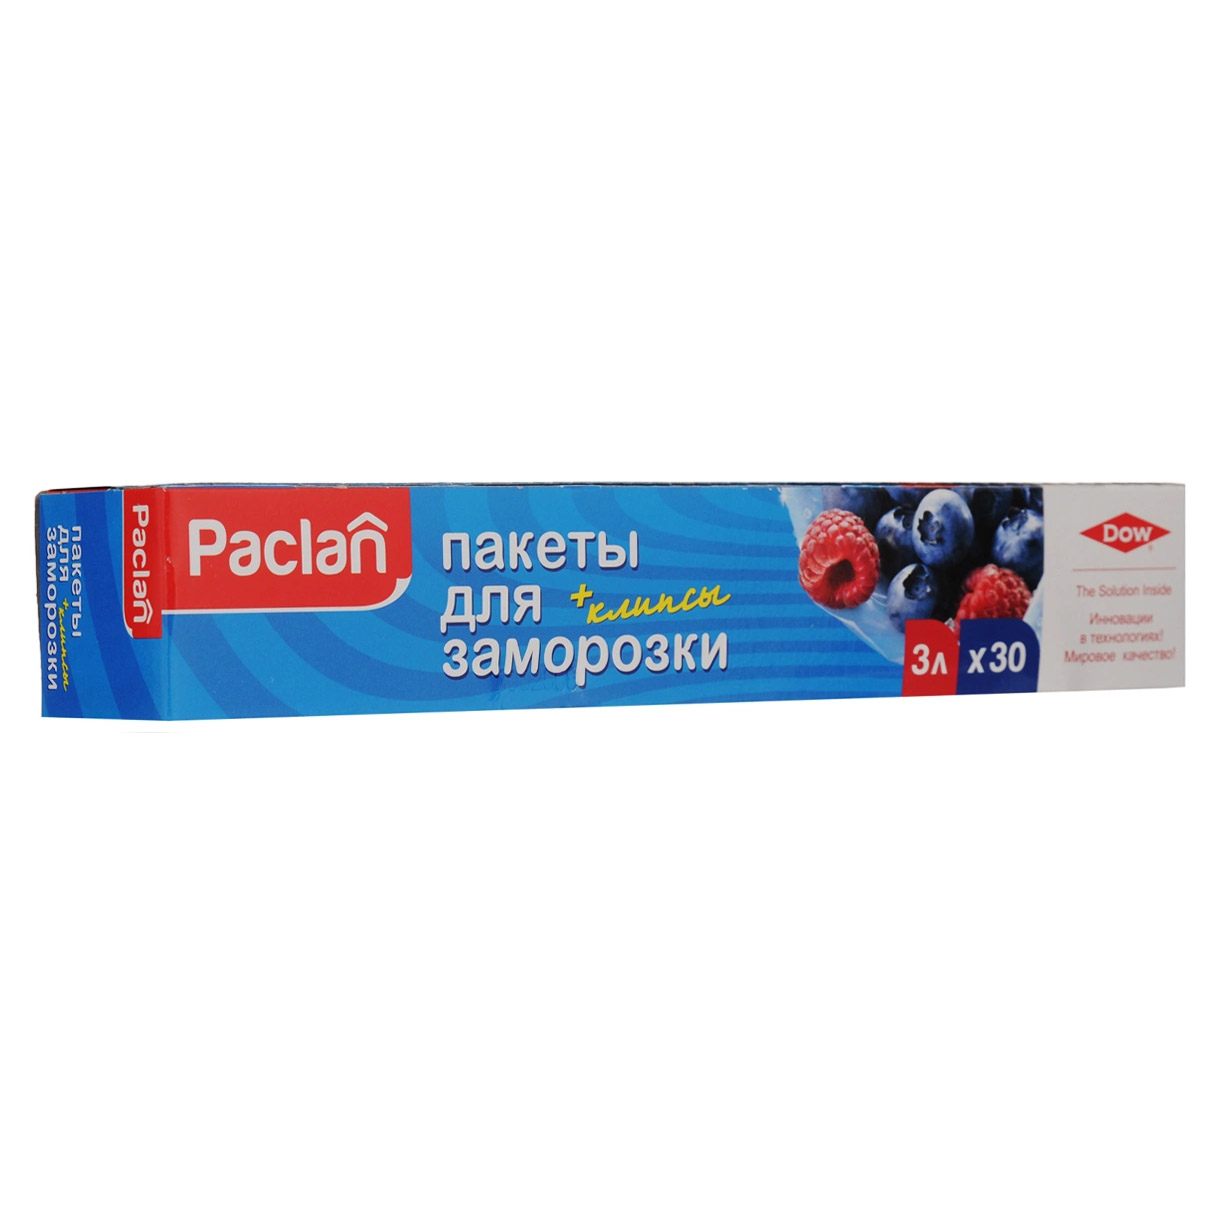 Пакеты Paclan для хранения и замораживания продуктов 3 л 30 шт paclan пакеты для замораживания 20